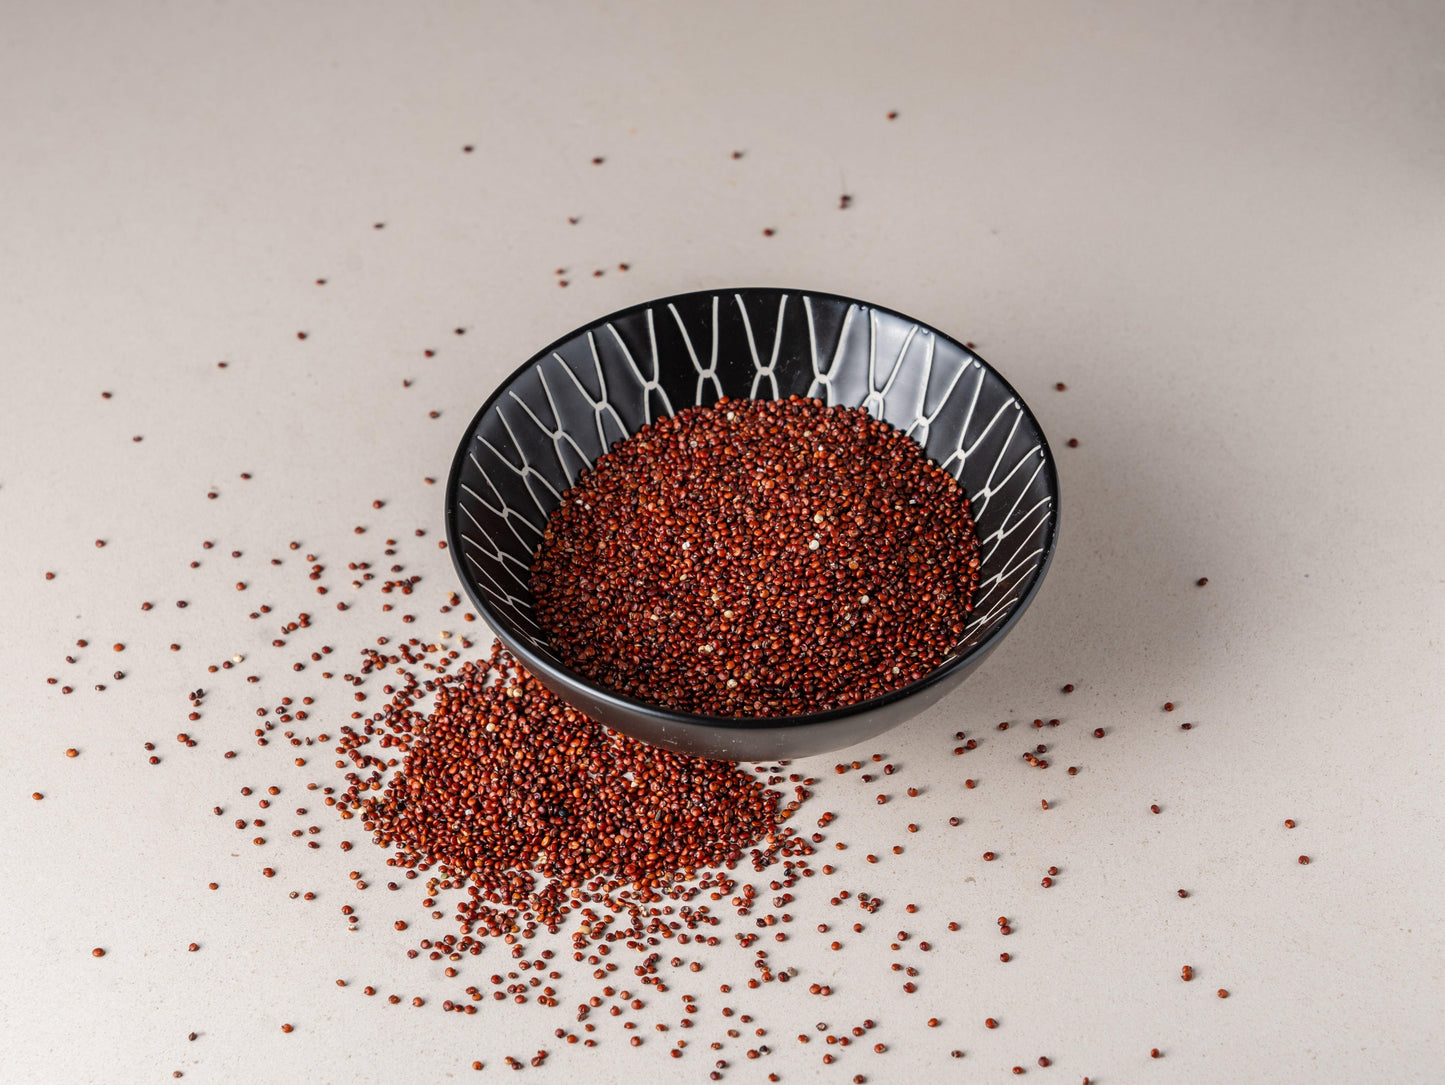 
                  
                    Sementes de Quinoa Vermelhas - Casca Rija
                  
                